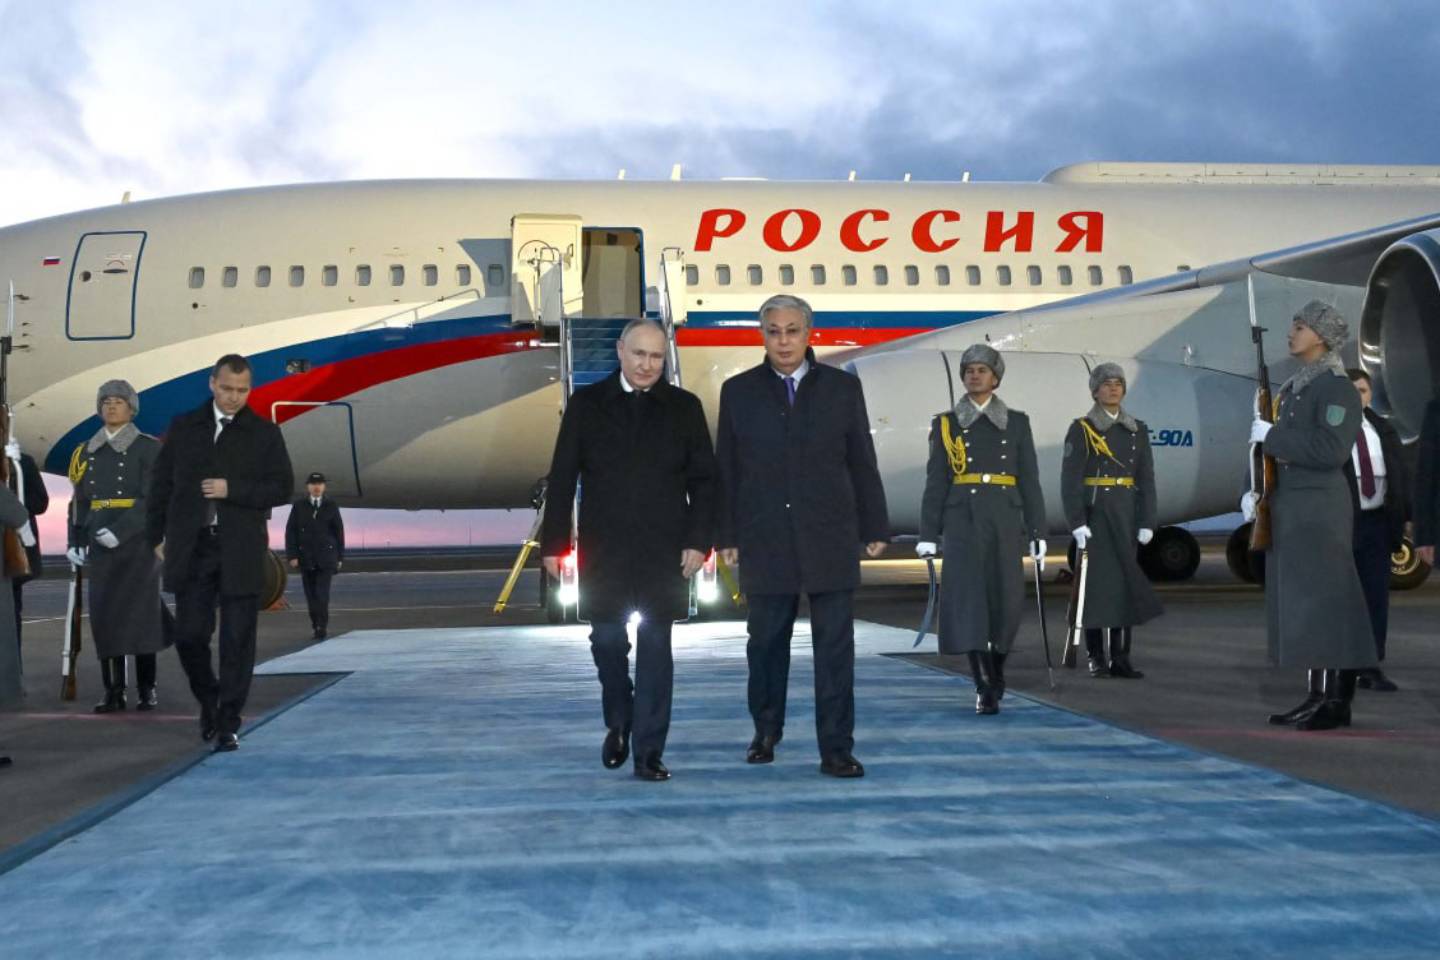 Новости мира / Политика в мире / Президент Российской Федерации прибыл в Астану